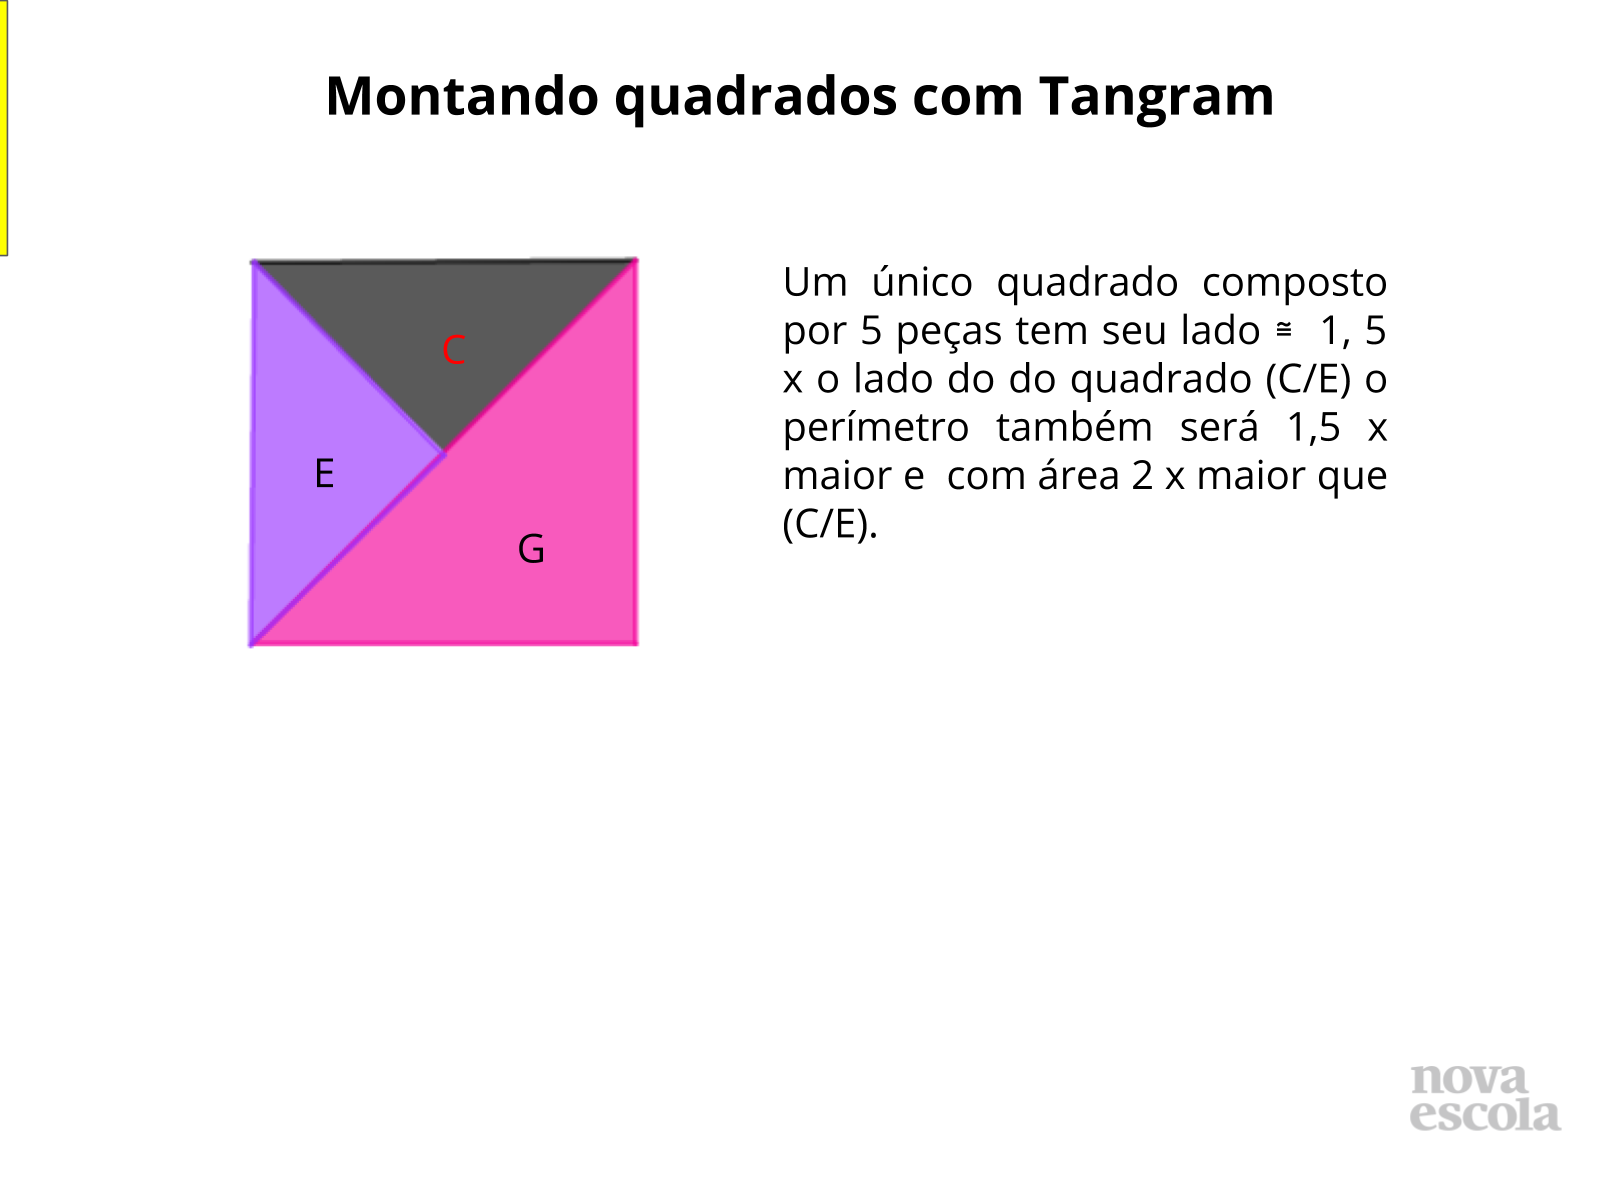 Montando quadrados com Tangram - Discussão da Solução (slides 13 ao 18)